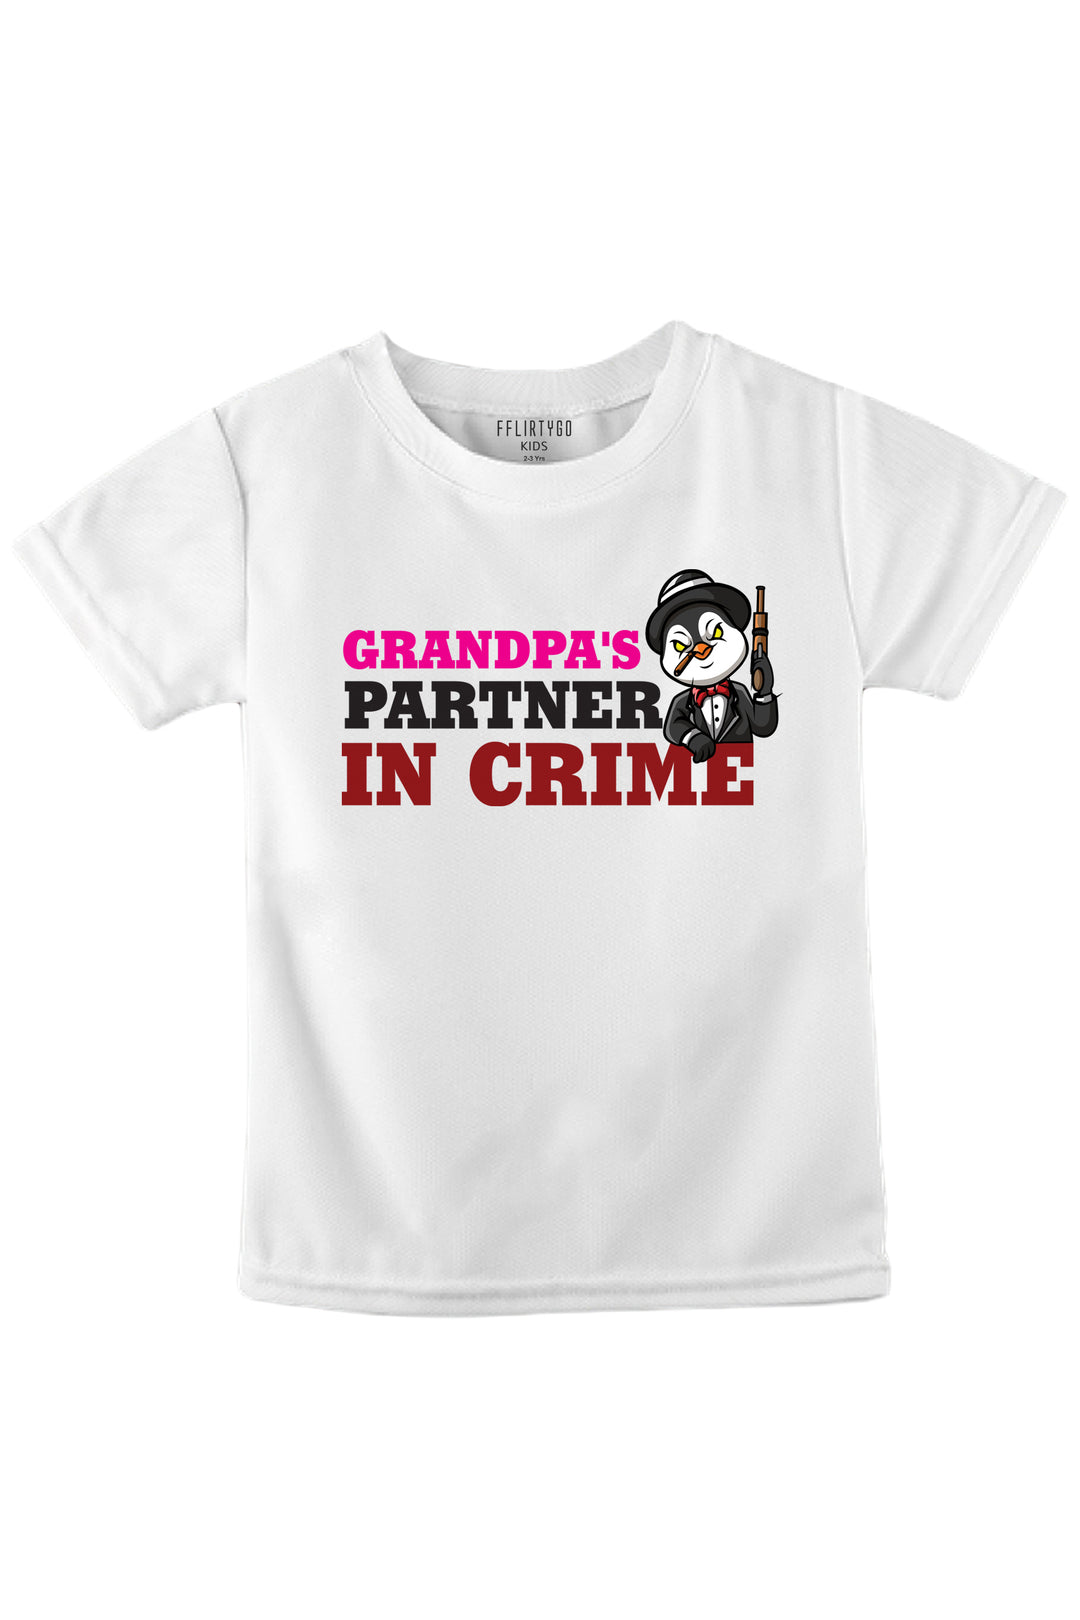 Grandpa's Partner In Crime